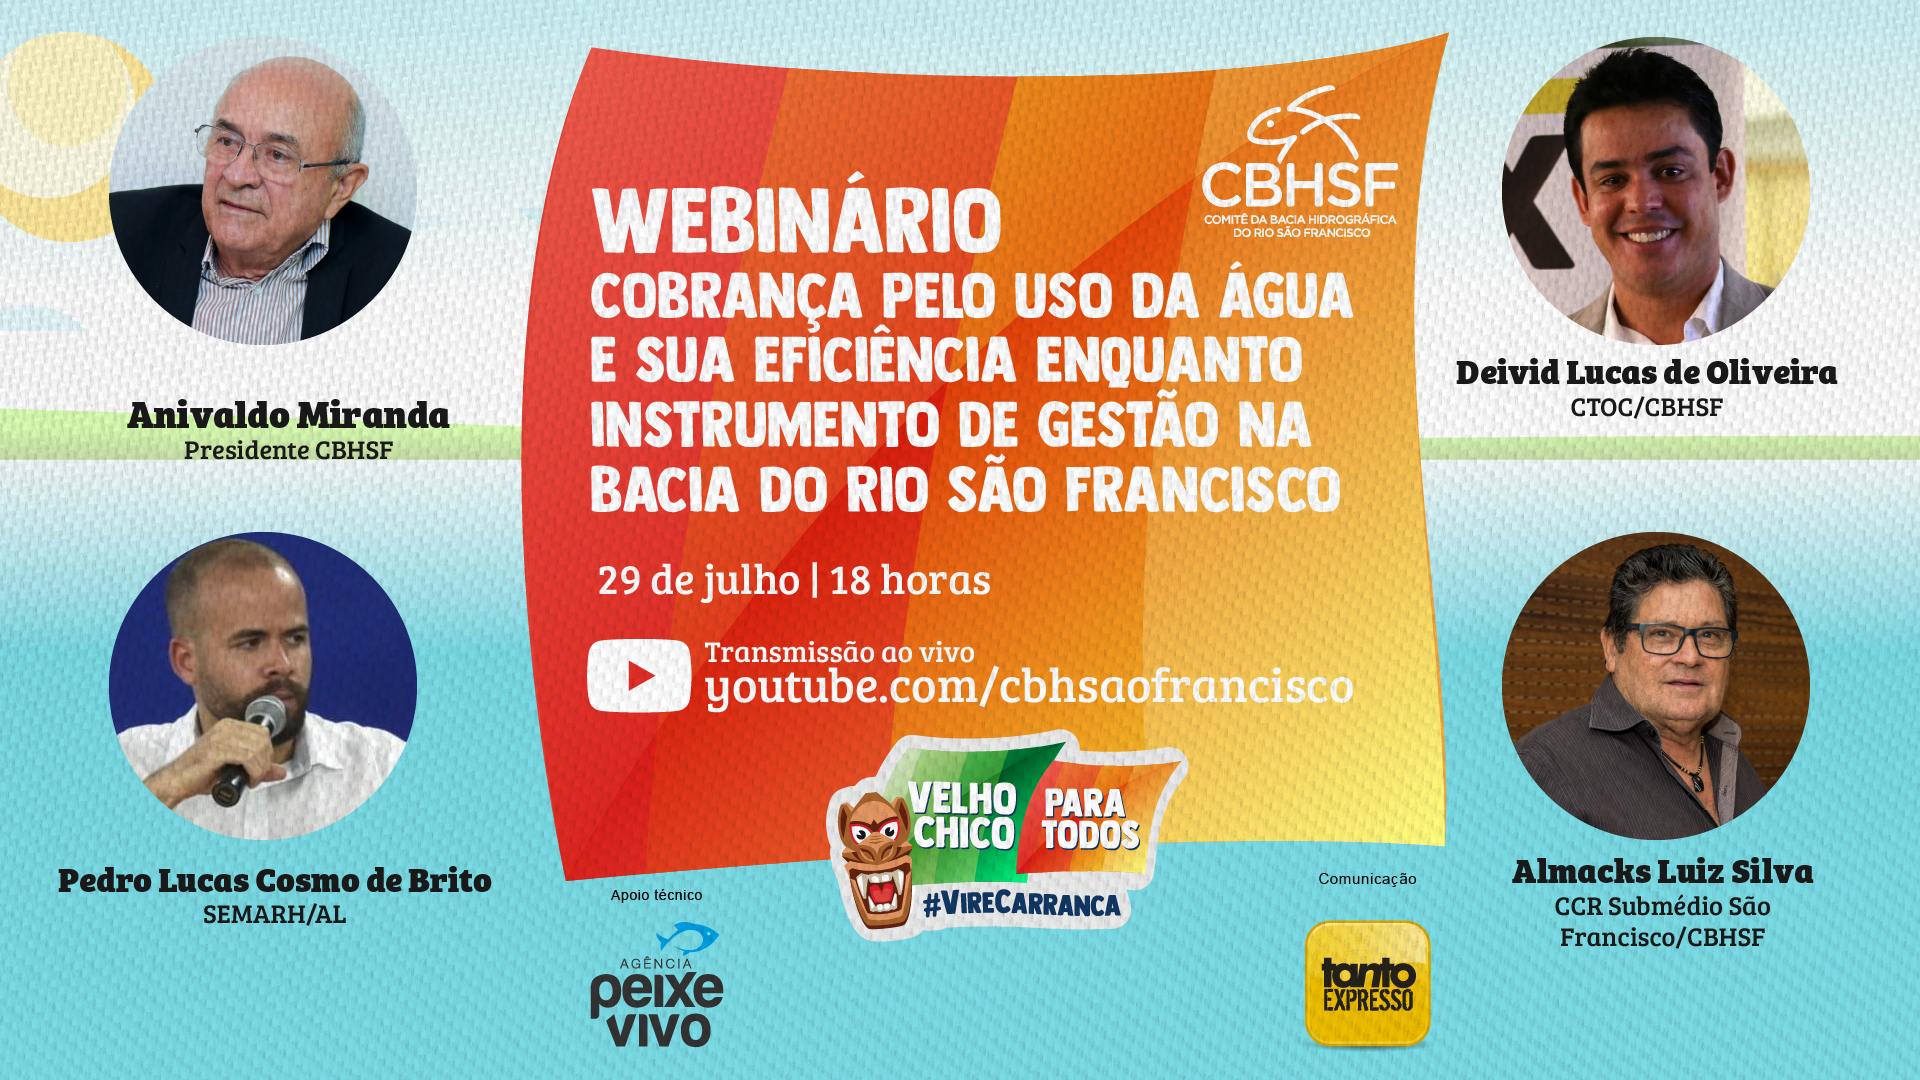 Webinário: Cobrança pelo uso da água e sua eficiência enquanto instrumento de gestão na Bacia do Rio São Francisco